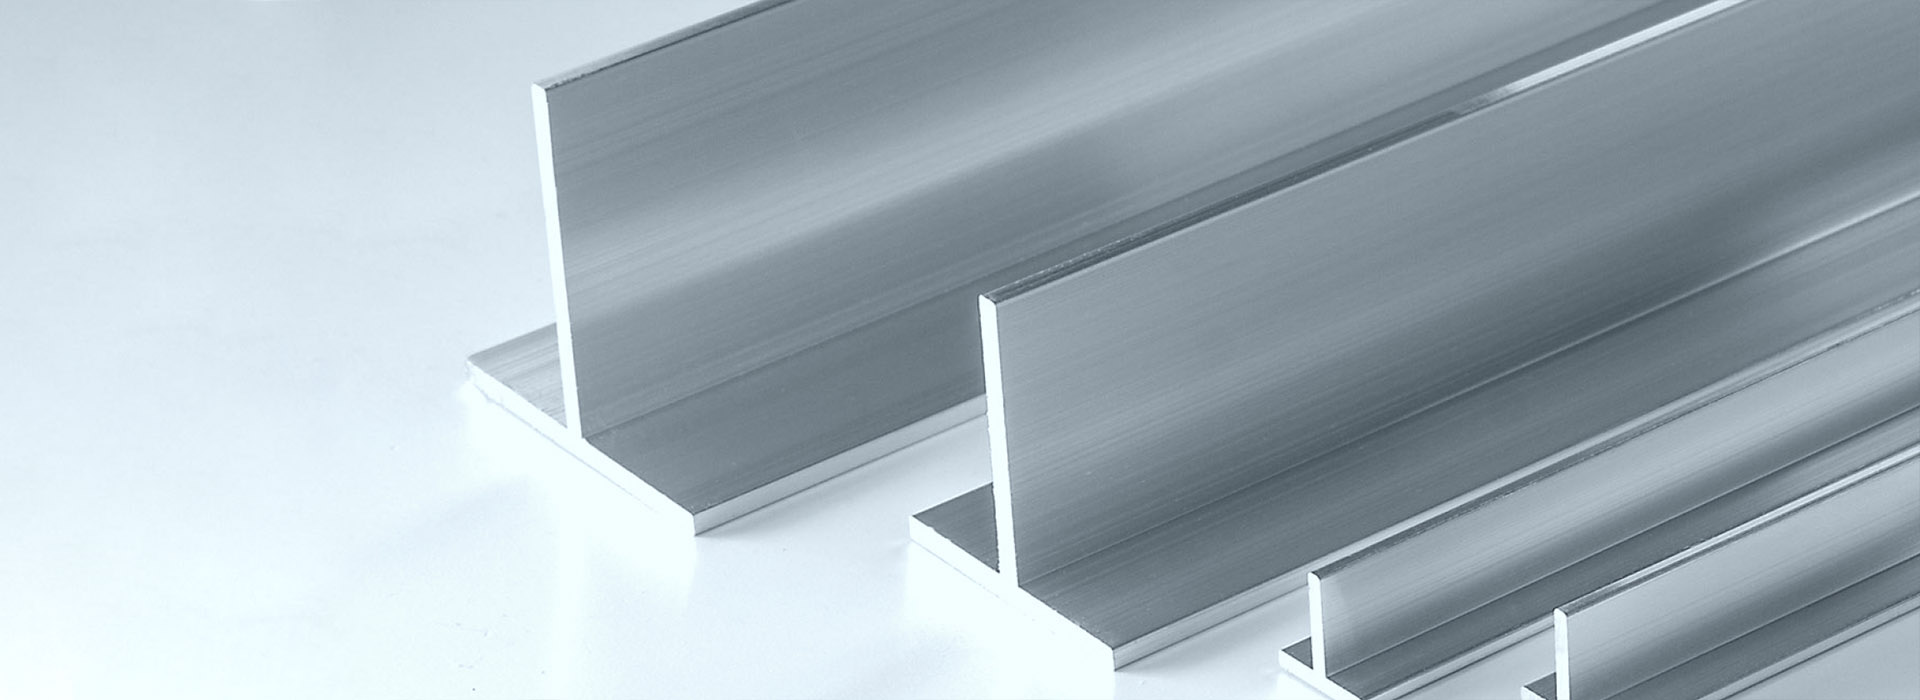 Профиль алюминиевый т образный для фасадов мебели